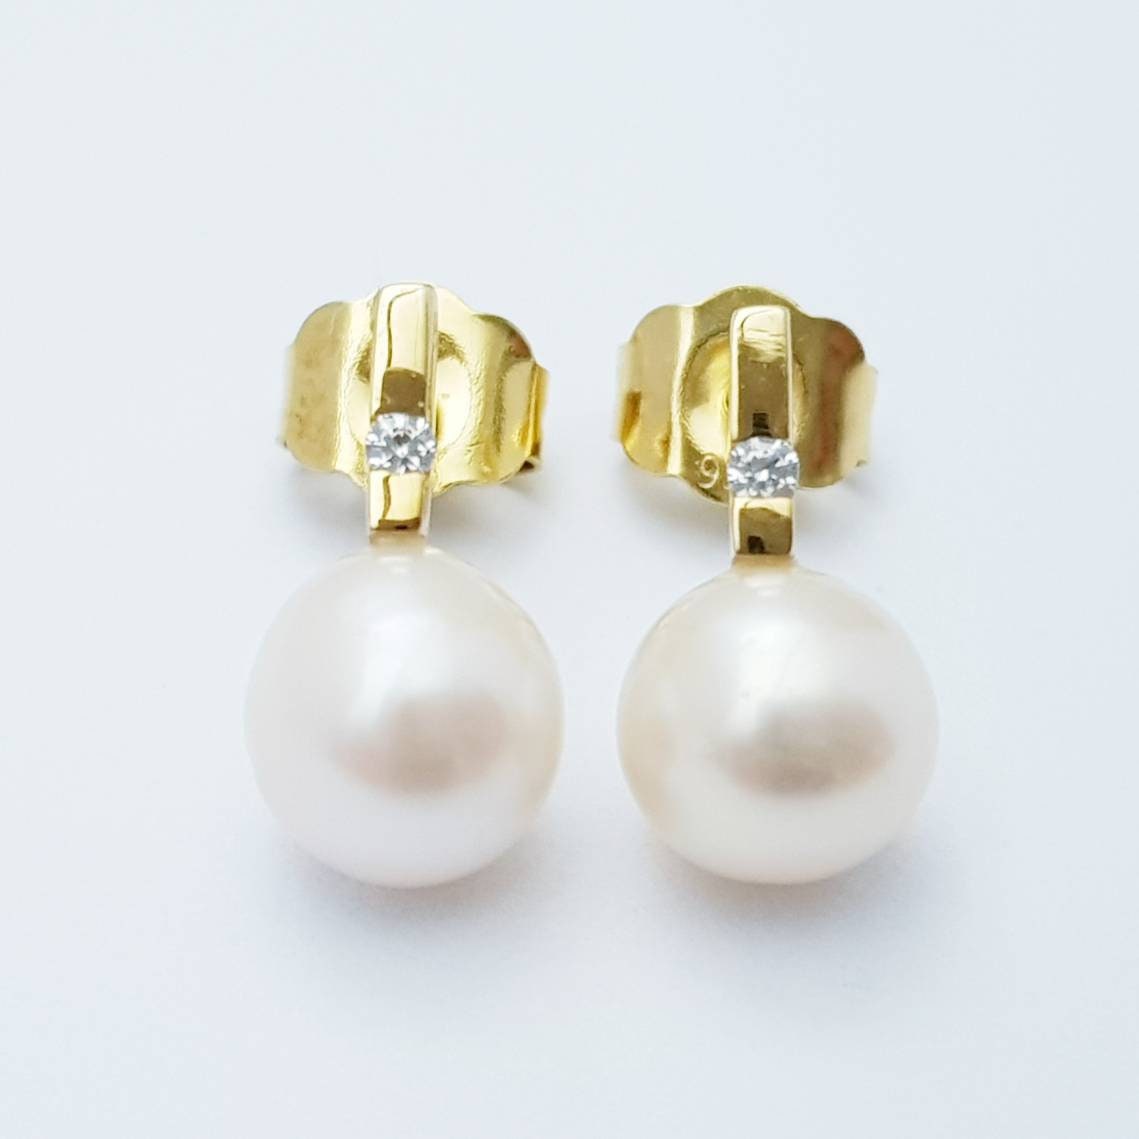 Small freshwater pearl studs earrings, minimal gold pearl earrings, elegant bar stud earrings